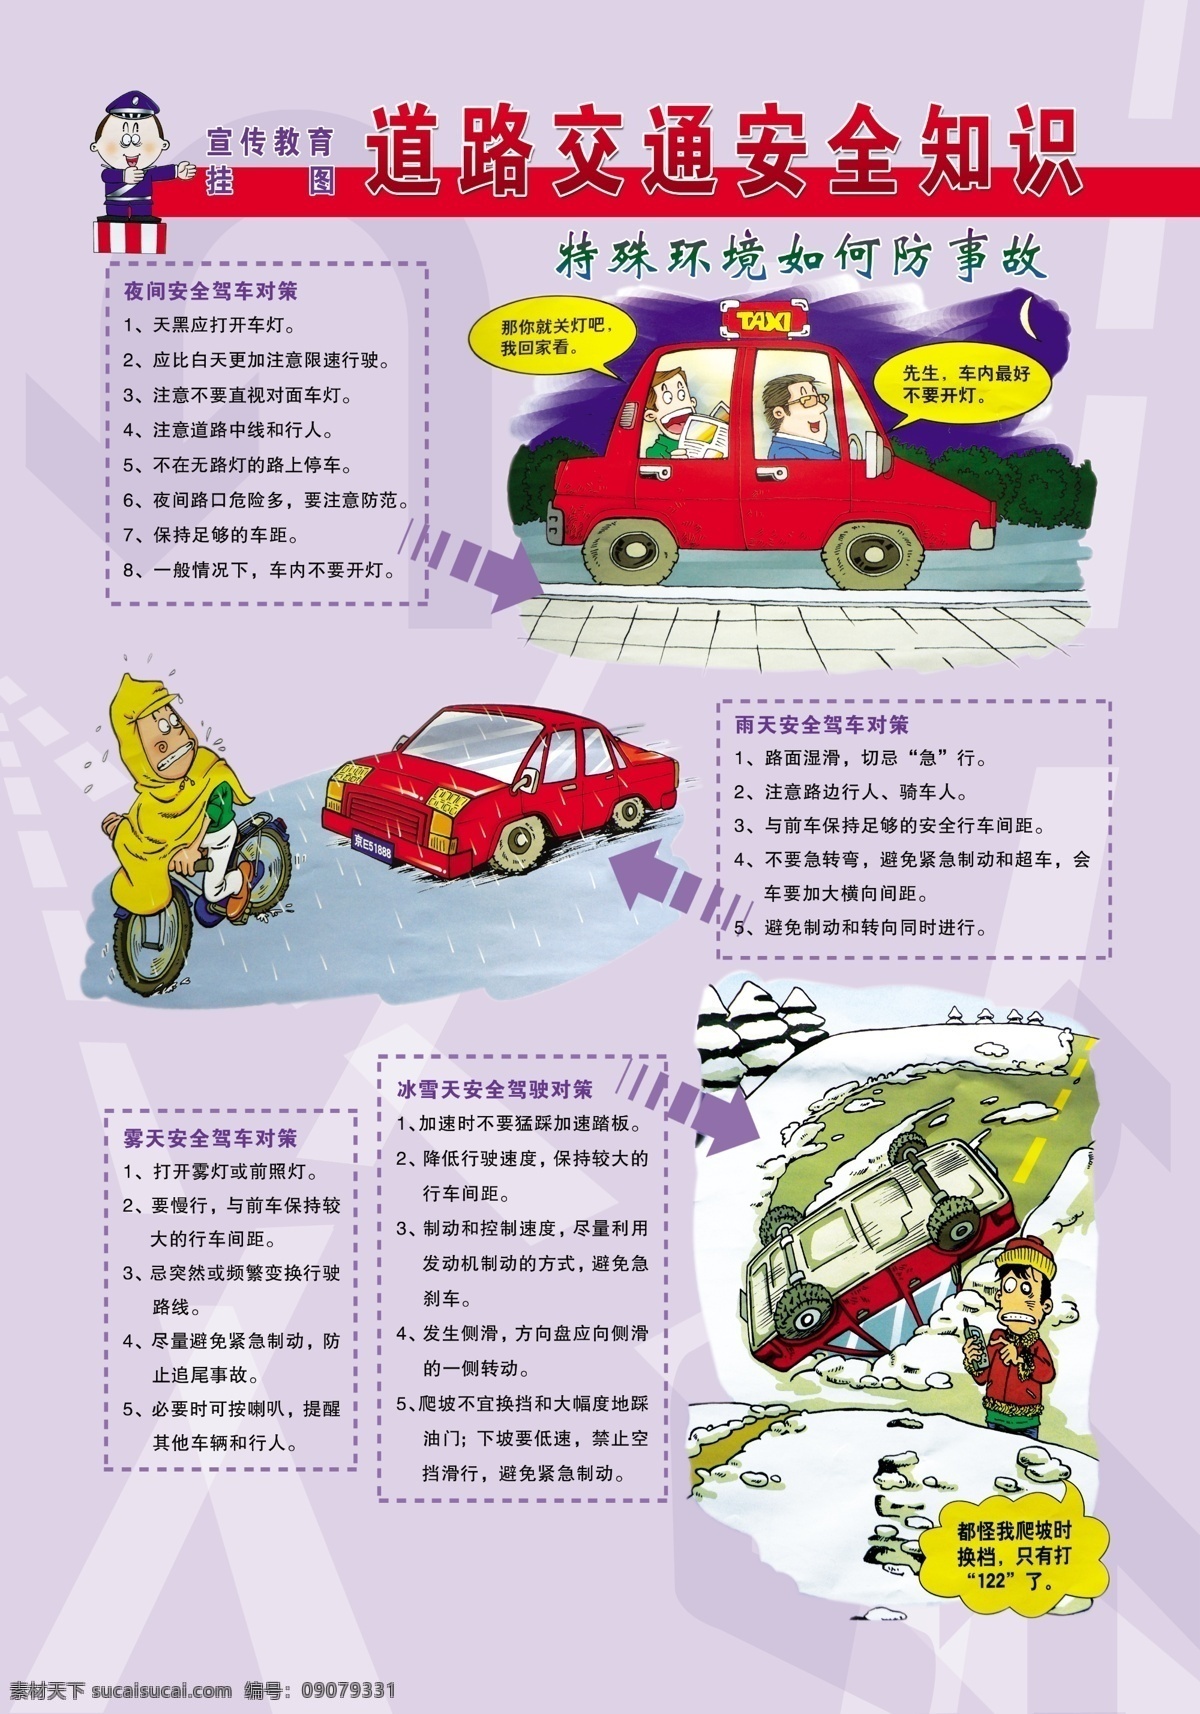 道路交通 安全 知识 特殊 环境 如何 防 事故 交通安全漫画 宣传教育挂图 dm宣传单 广告设计模板 源文件